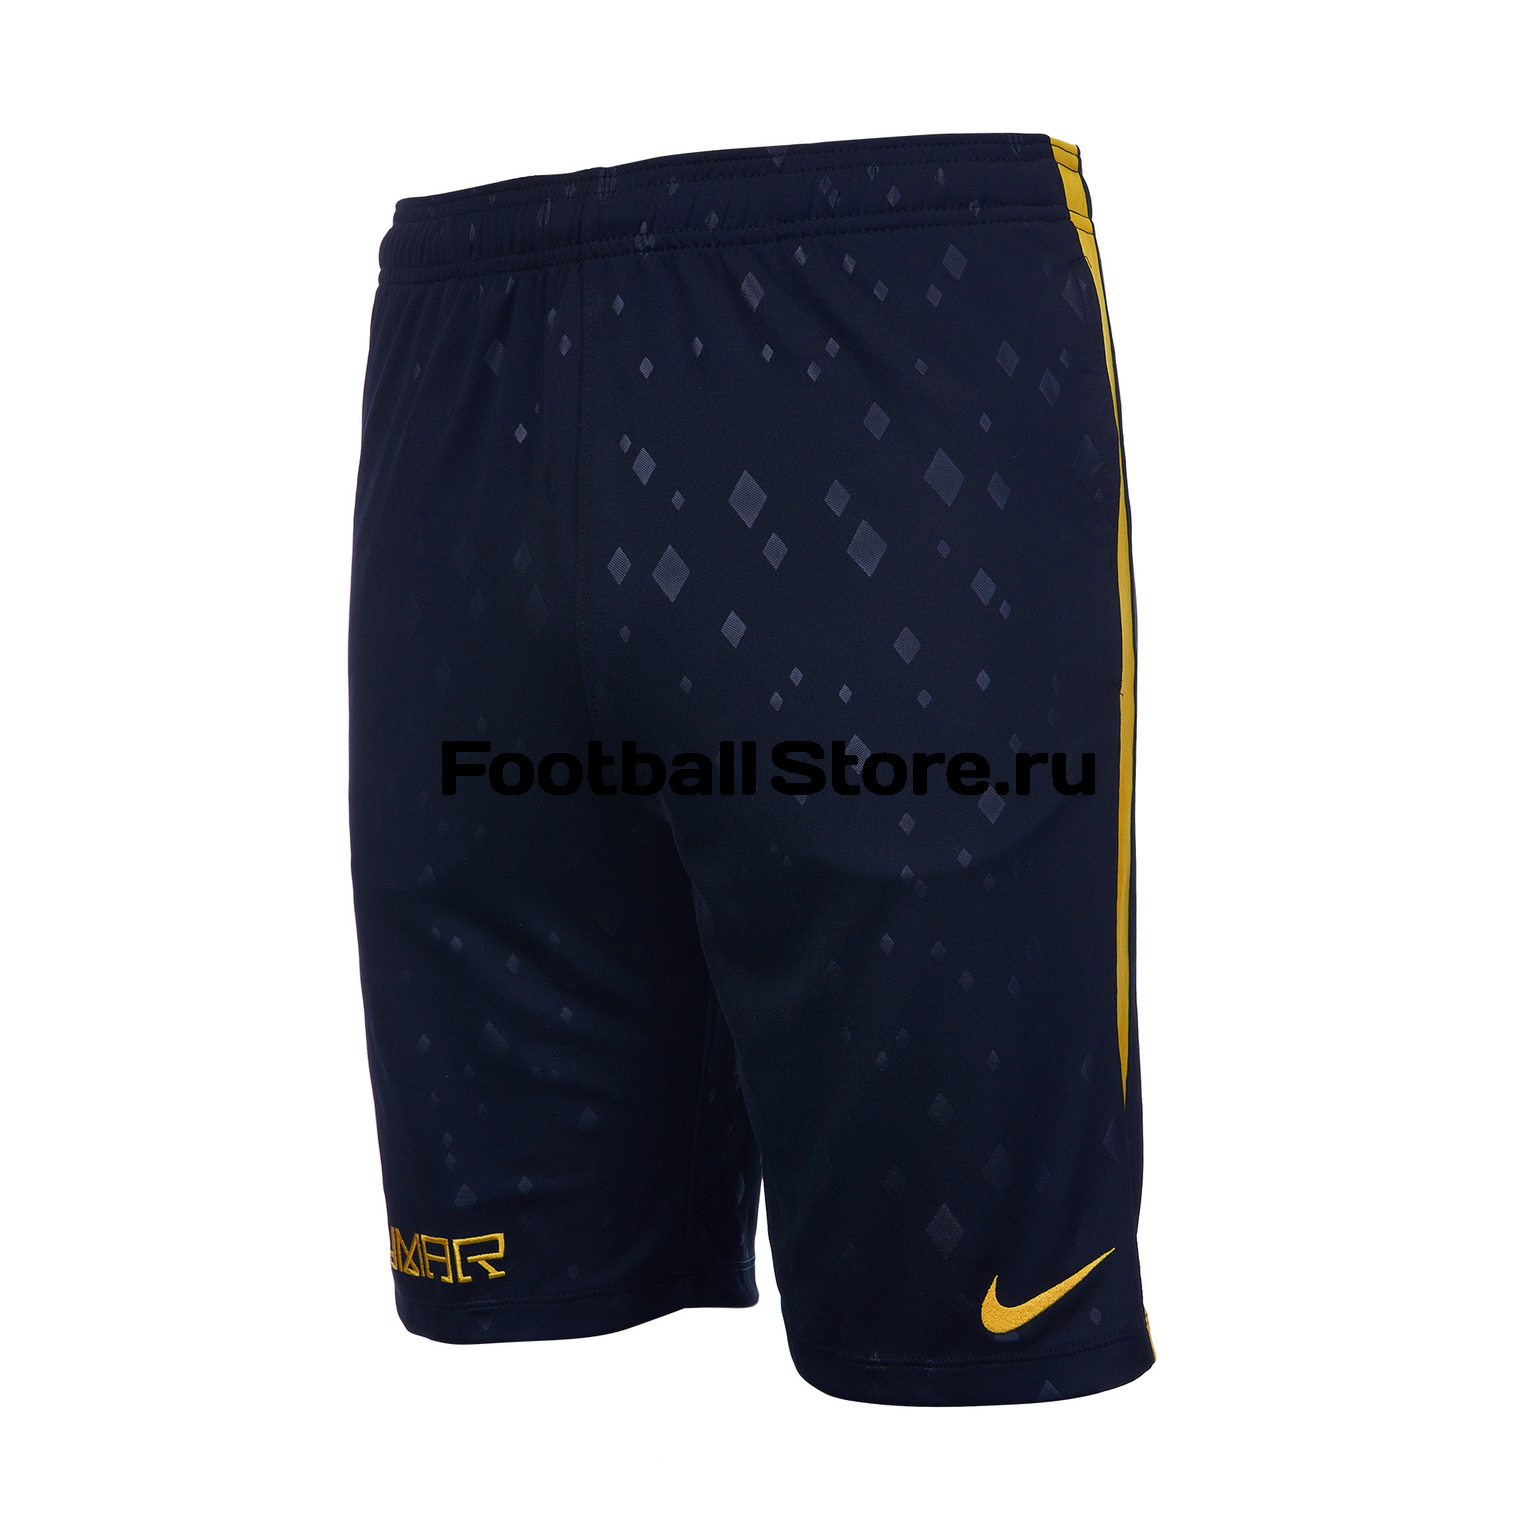 Шорты подростковые Nike Neymar AA3872-010 